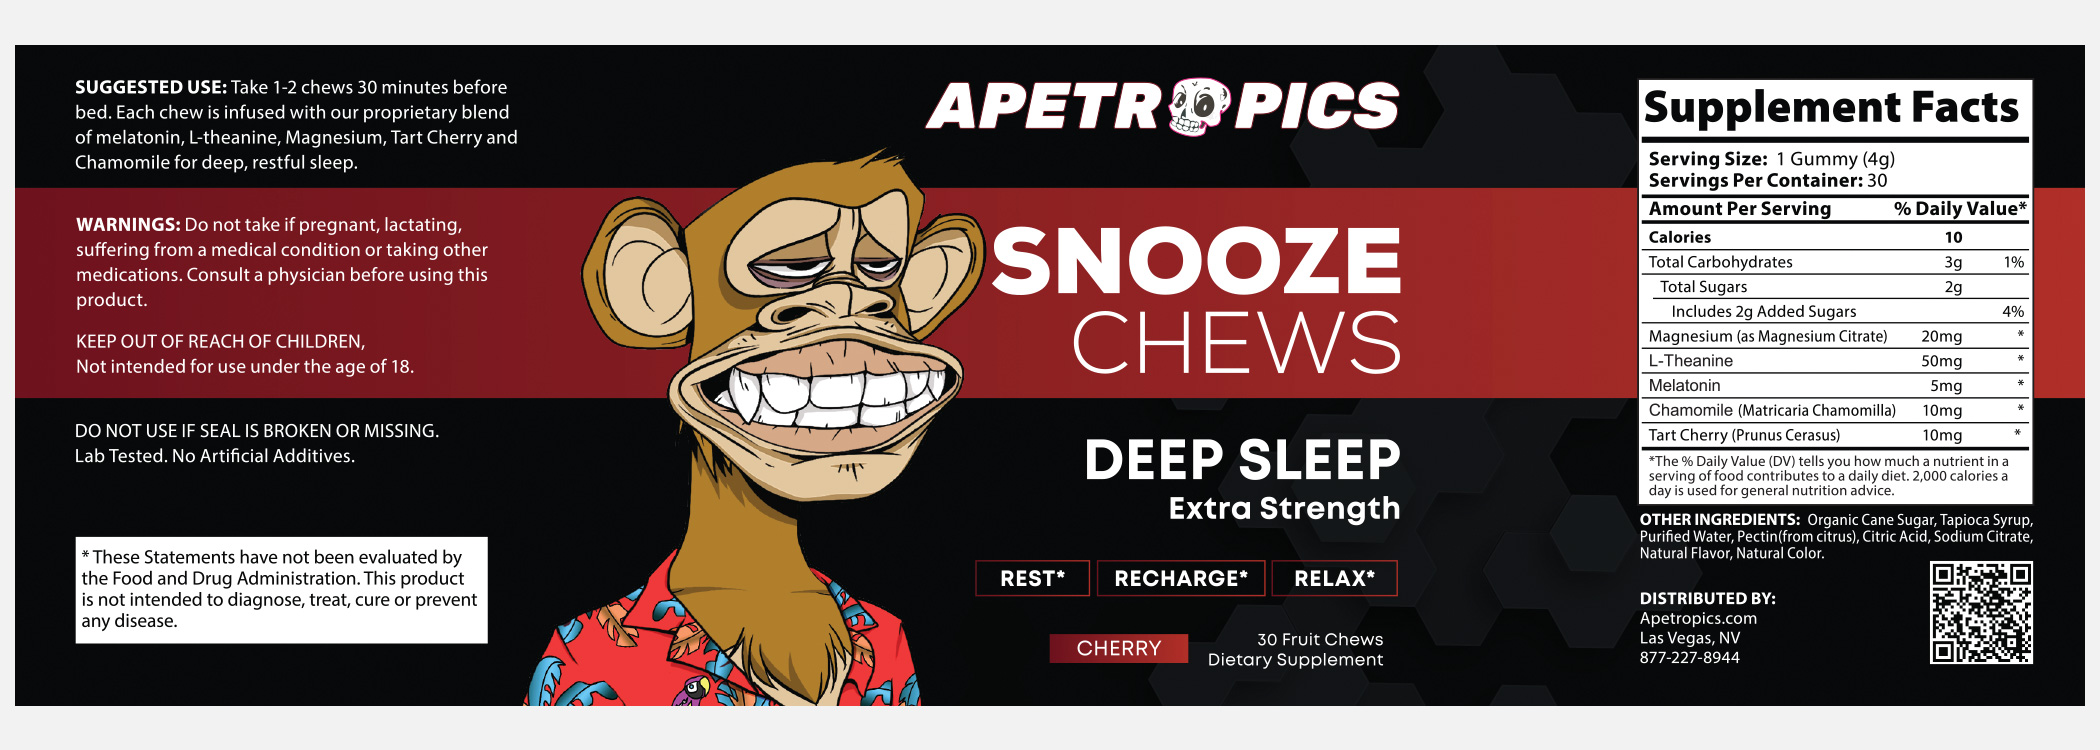 snooze-chews